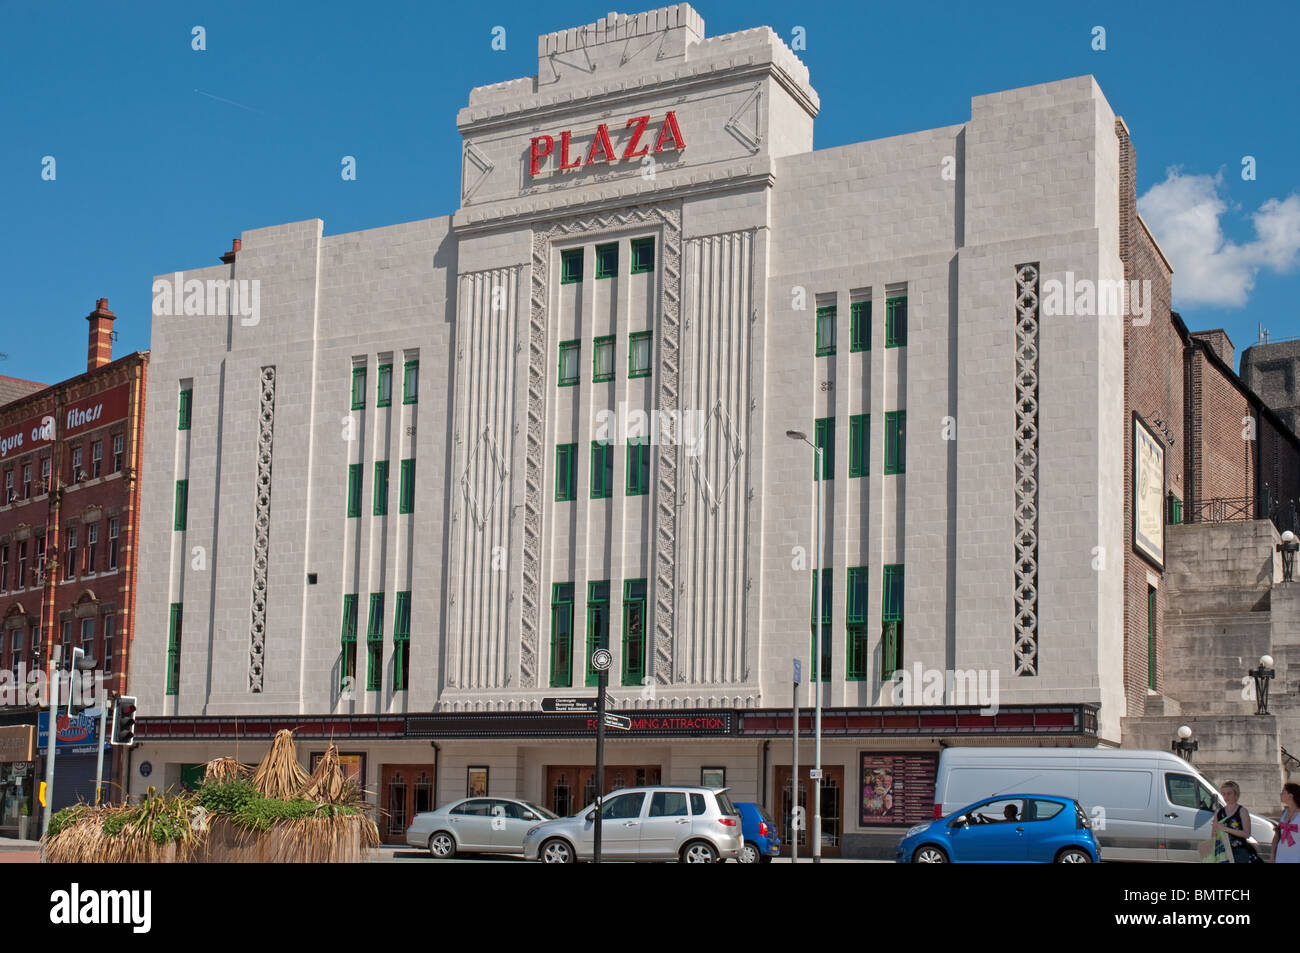 Die Plaza-Stockport, eröffnete 1932 im Art-Deco-Kino und Theater vom Architekten W. Thornley Denkmalschutz Grad II * aufgeführt. Stockfoto